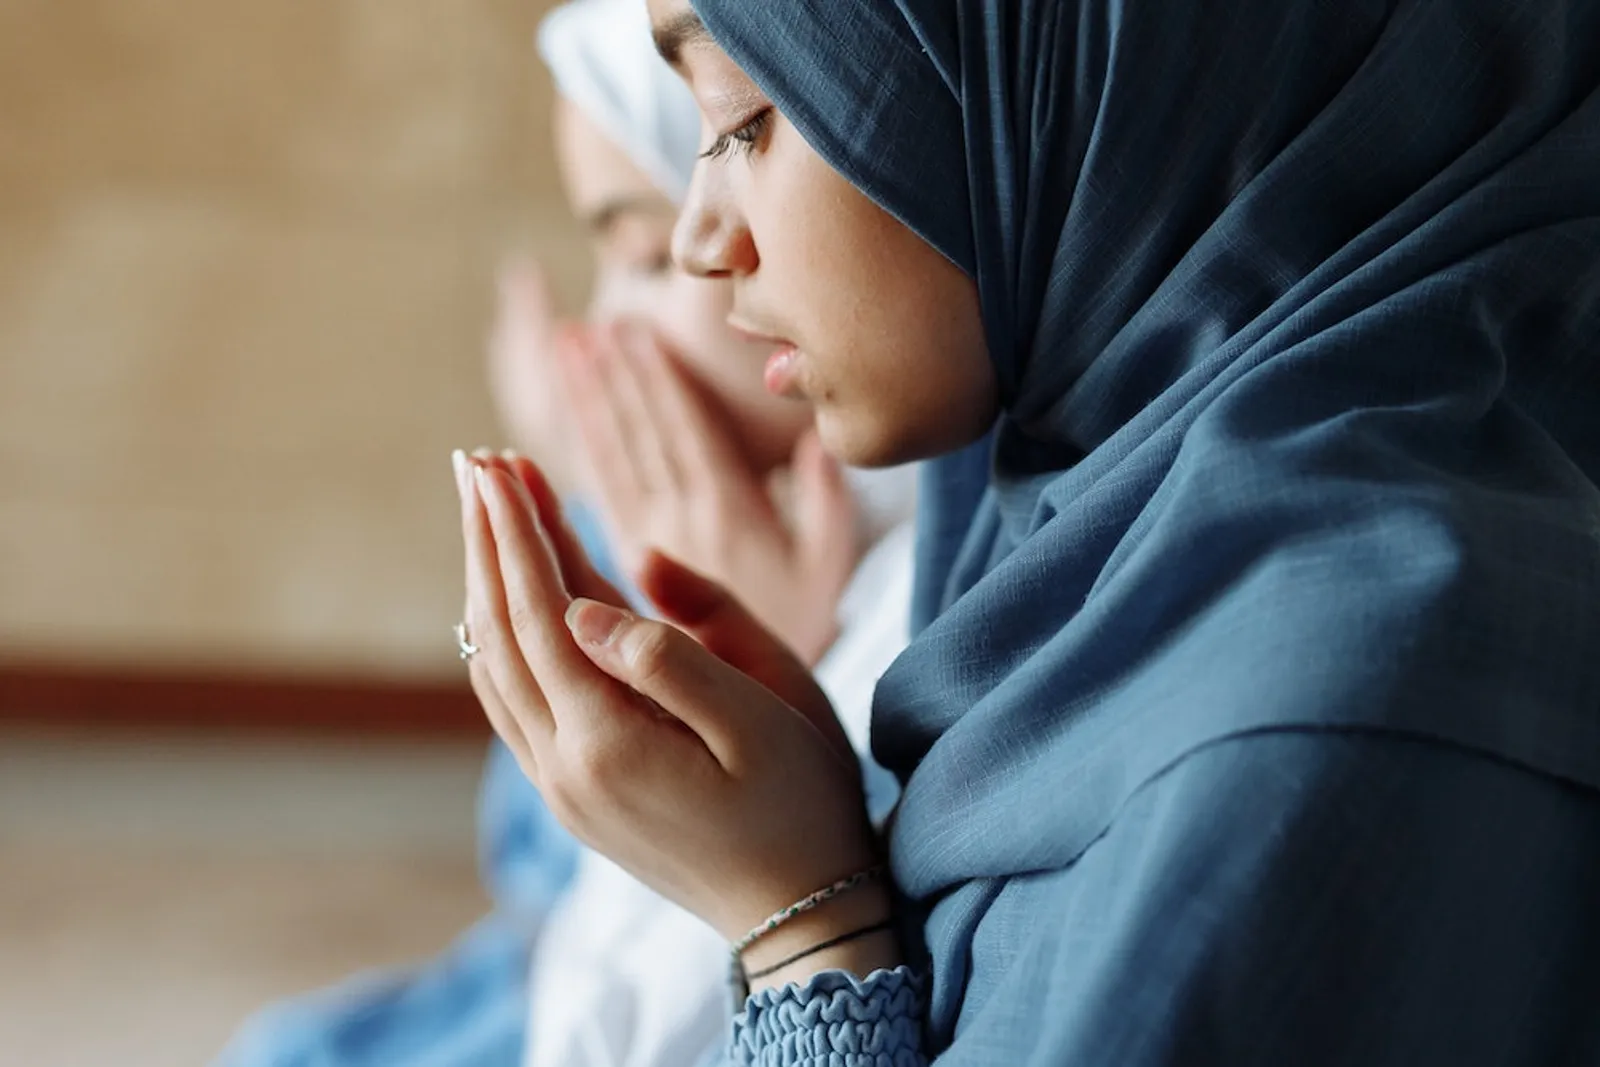 Doa Akasah Arab, Latin, dan Artinya Lengkap untuk Segala Hajat